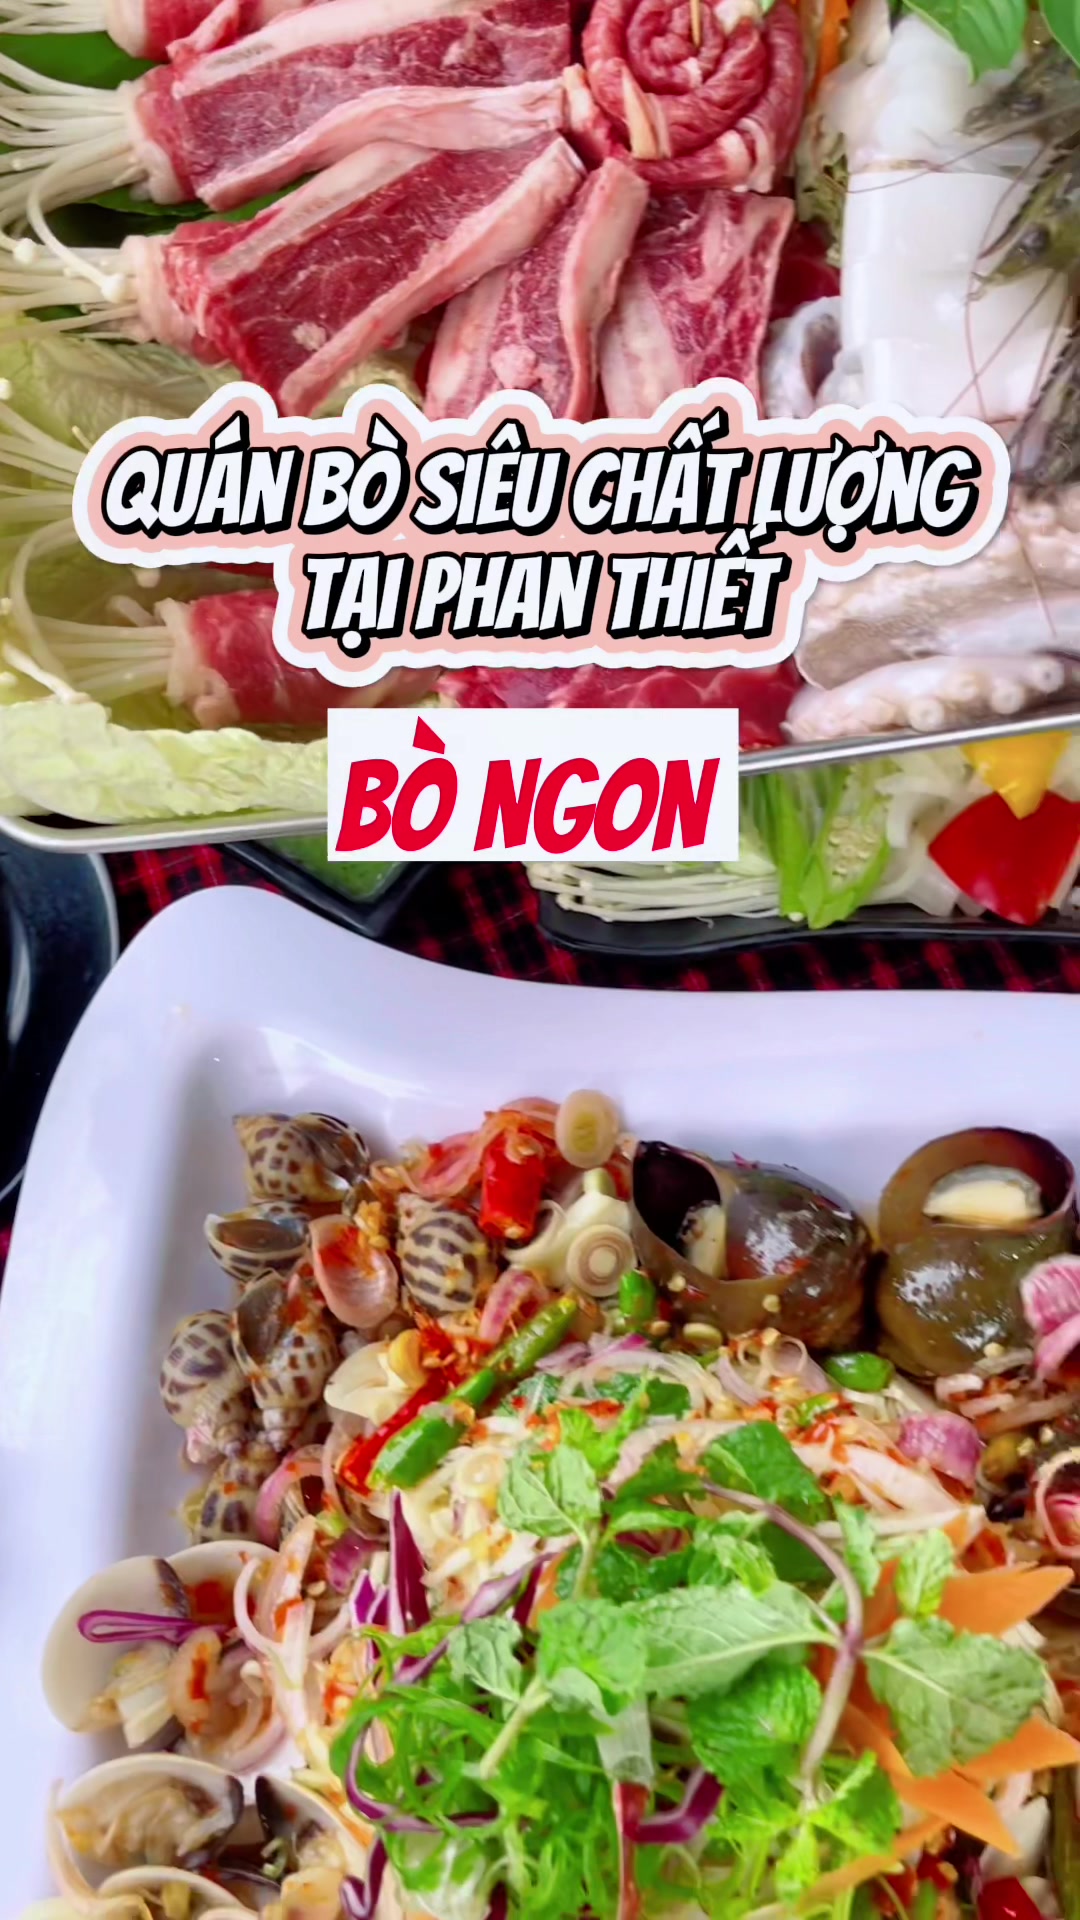 @Đi Phan Thiết phải ăn Bò Ngon #phanthiet #ancungtiktok #revi...